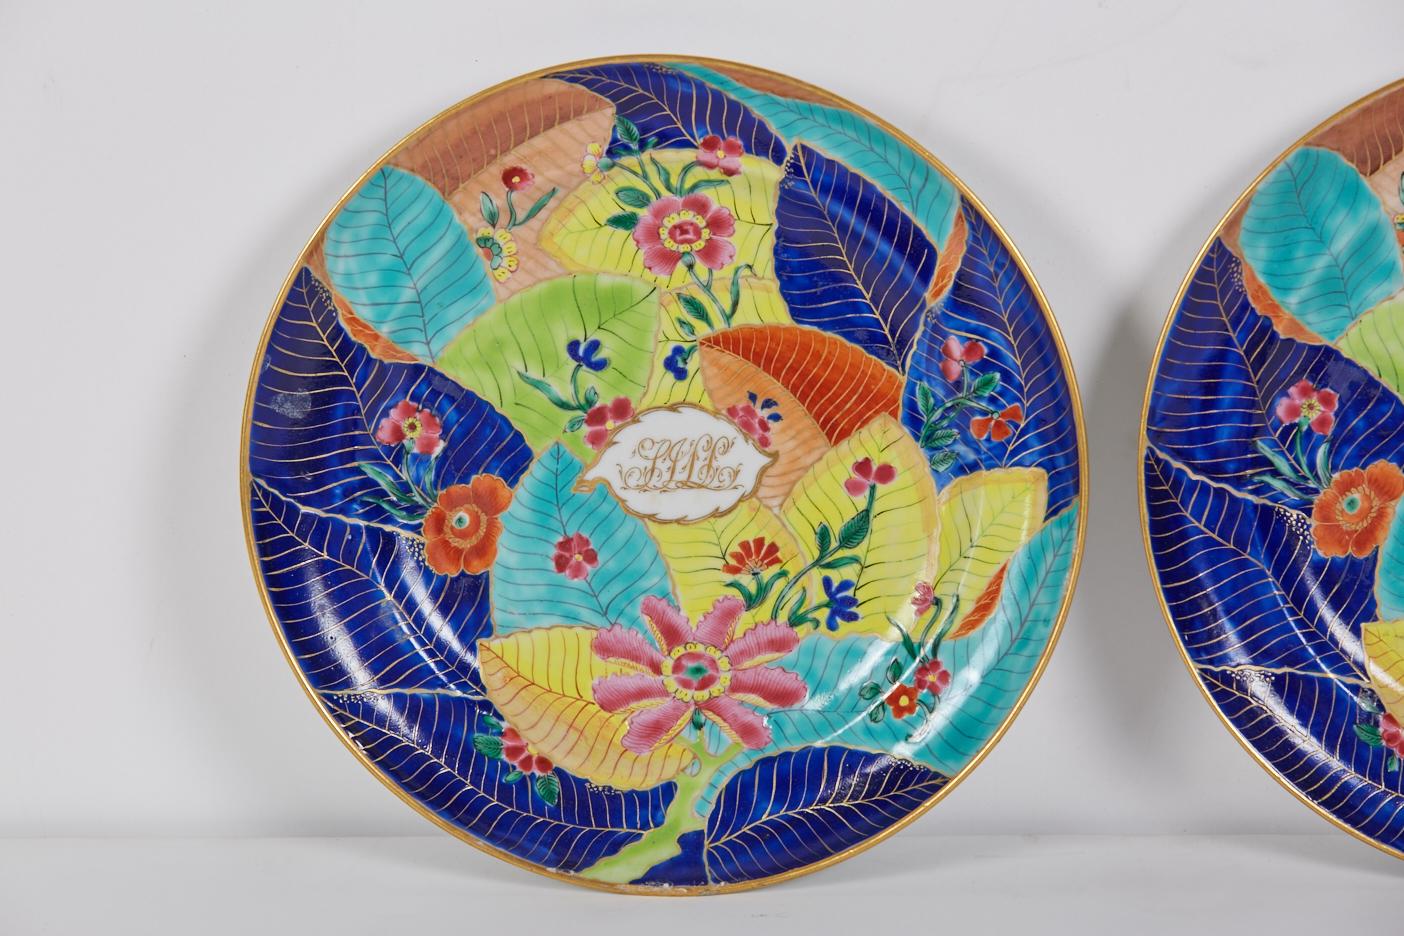 Paire d'assiettes rondes en porcelaine de 7,875 po de diamètre avec un motif général aux couleurs vives et audacieuses connu sous le nom de motif de la 